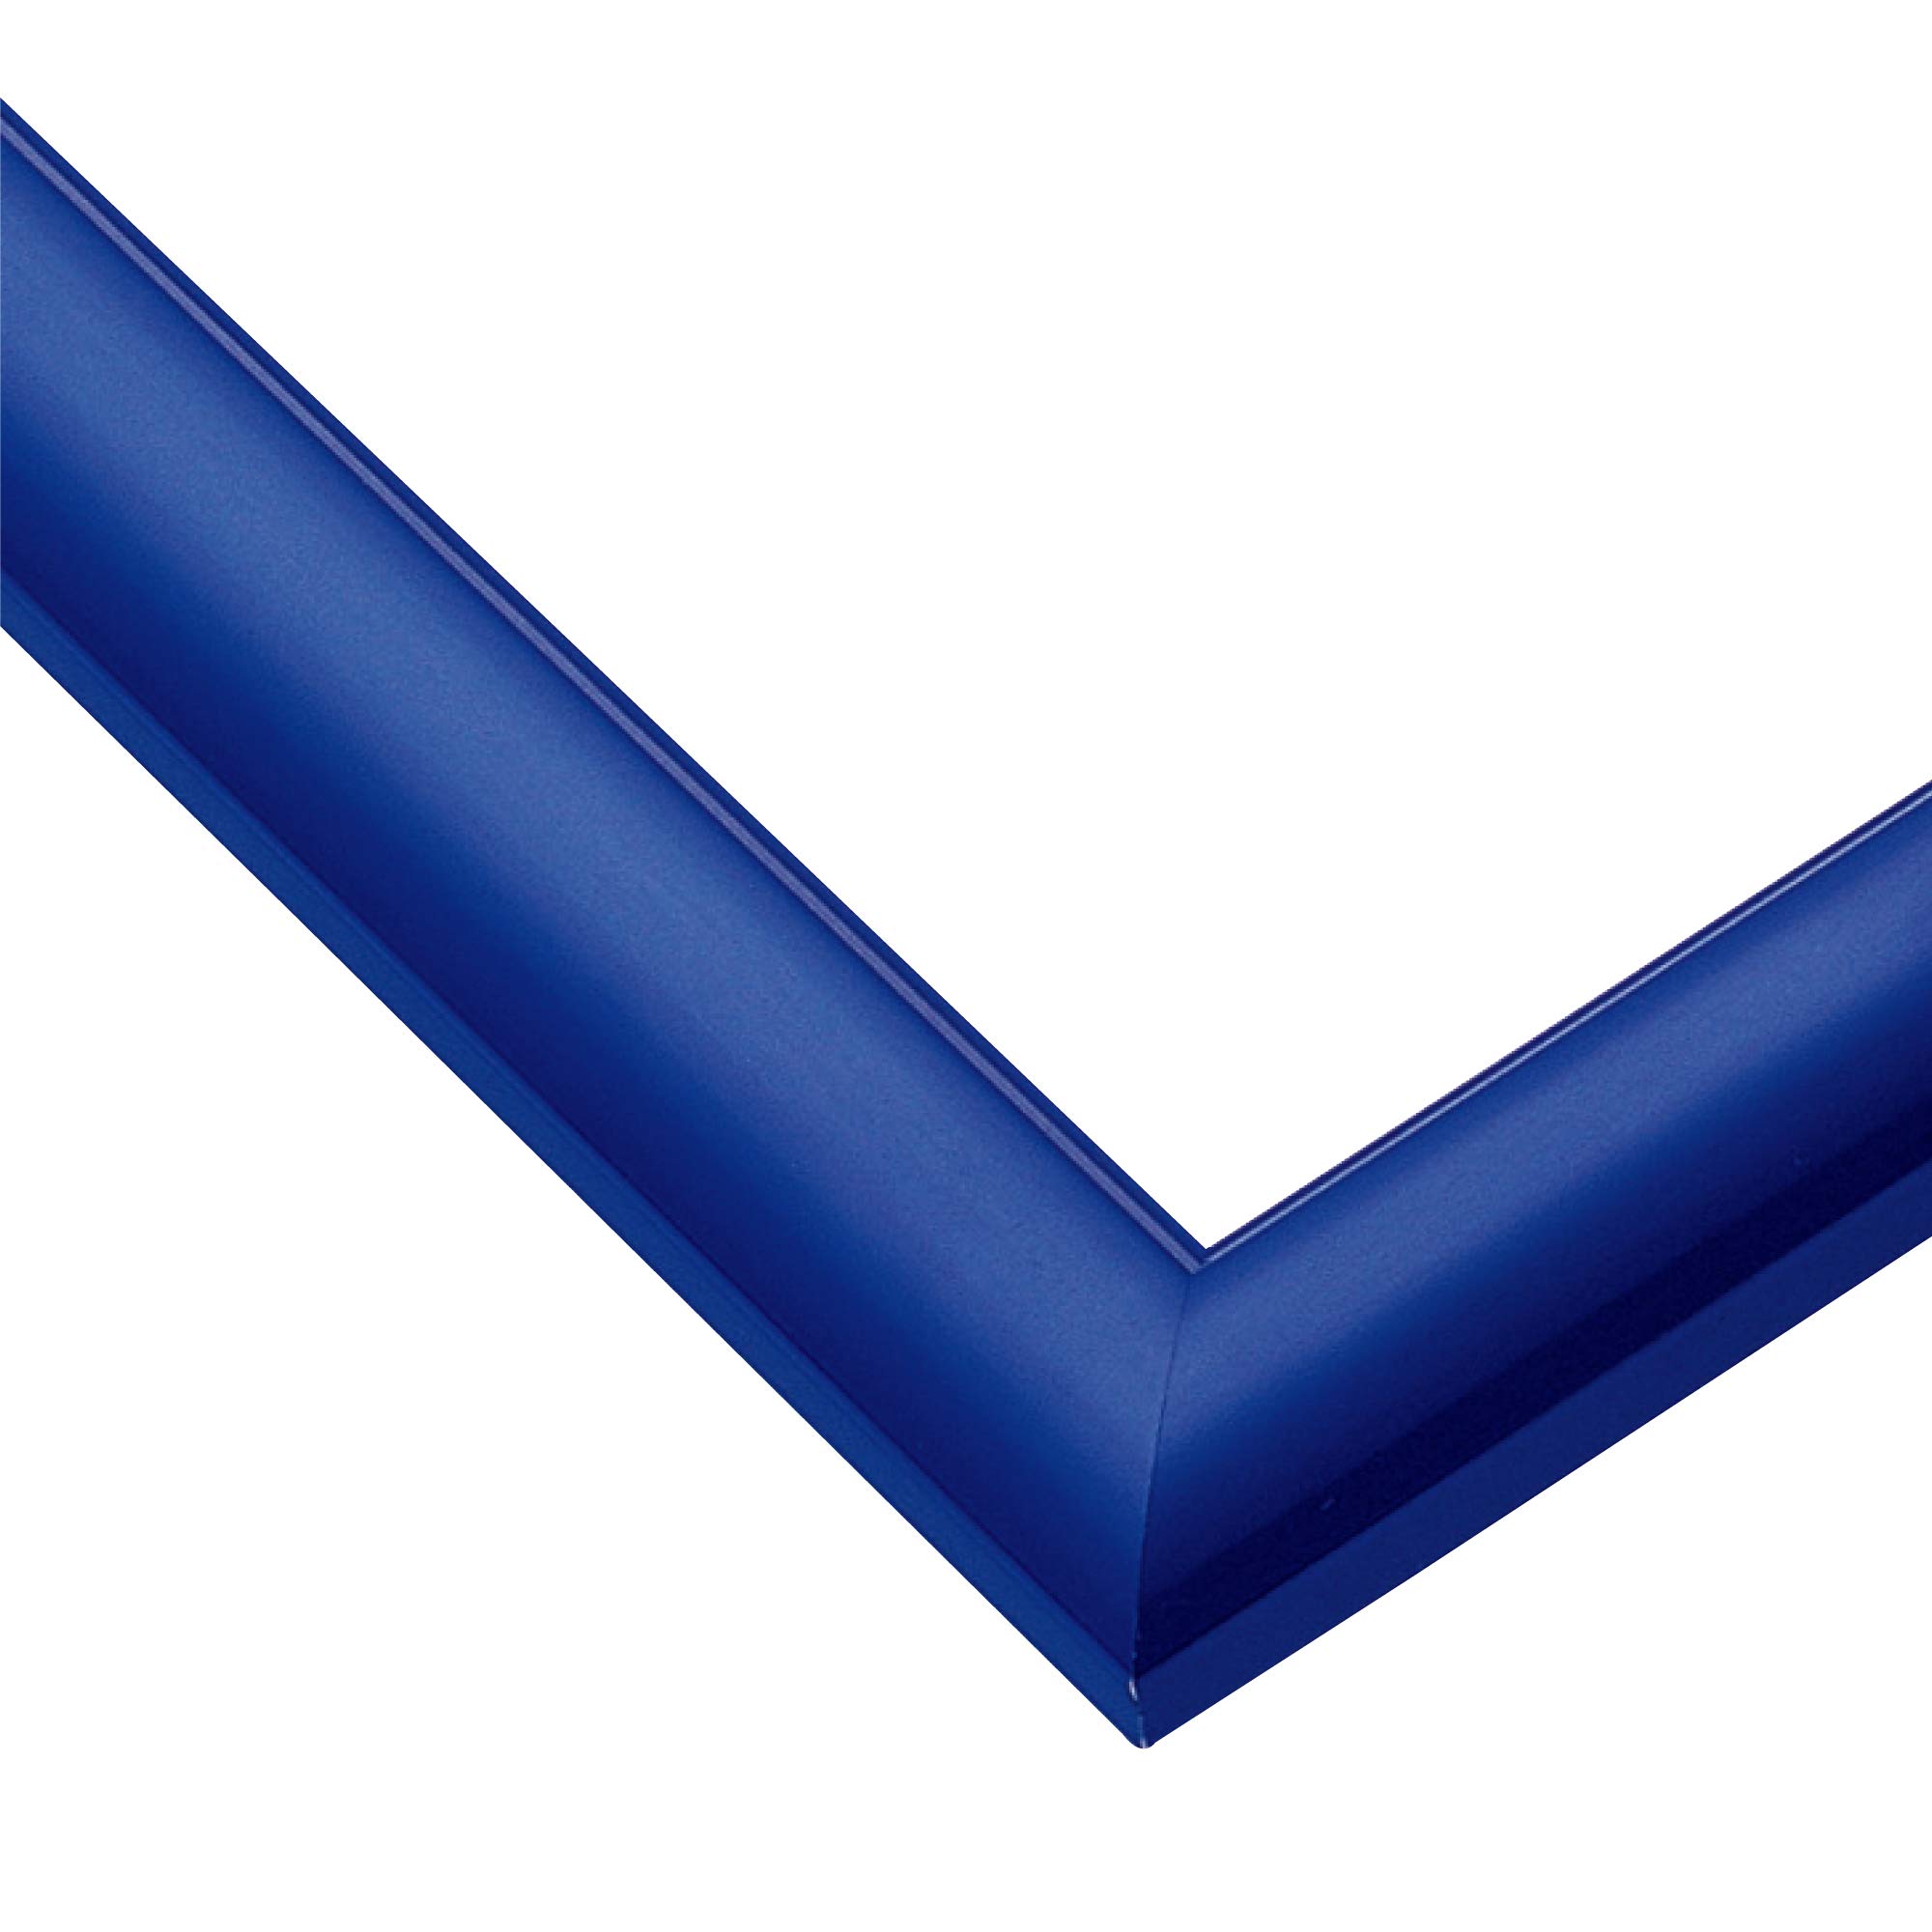 商品情報商品の説明説明 商品紹介 濃いブルーは絵柄を引きしめます。心を落ちつかせ、お部屋に清涼感をあたえます。 安全警告 なし主な仕様 カラー:シャインブルーbr対応ジグソーパズルサイズ:18.2x25.7cmbrパネルナンバー:1-ボbr天然木を使用した、高級感あふれるジグソーパズル専用パネル(フレーム)。br絵画用額縁と同様の"こだわりの仕上げ"と豊富なカラーバリエーション。br色は、高級感のある鮮やかなシャインブルーです。brジグソーパズルの褪色を防ぐUVカット仕様。brポリウレタン塗装brB5・JIS規格